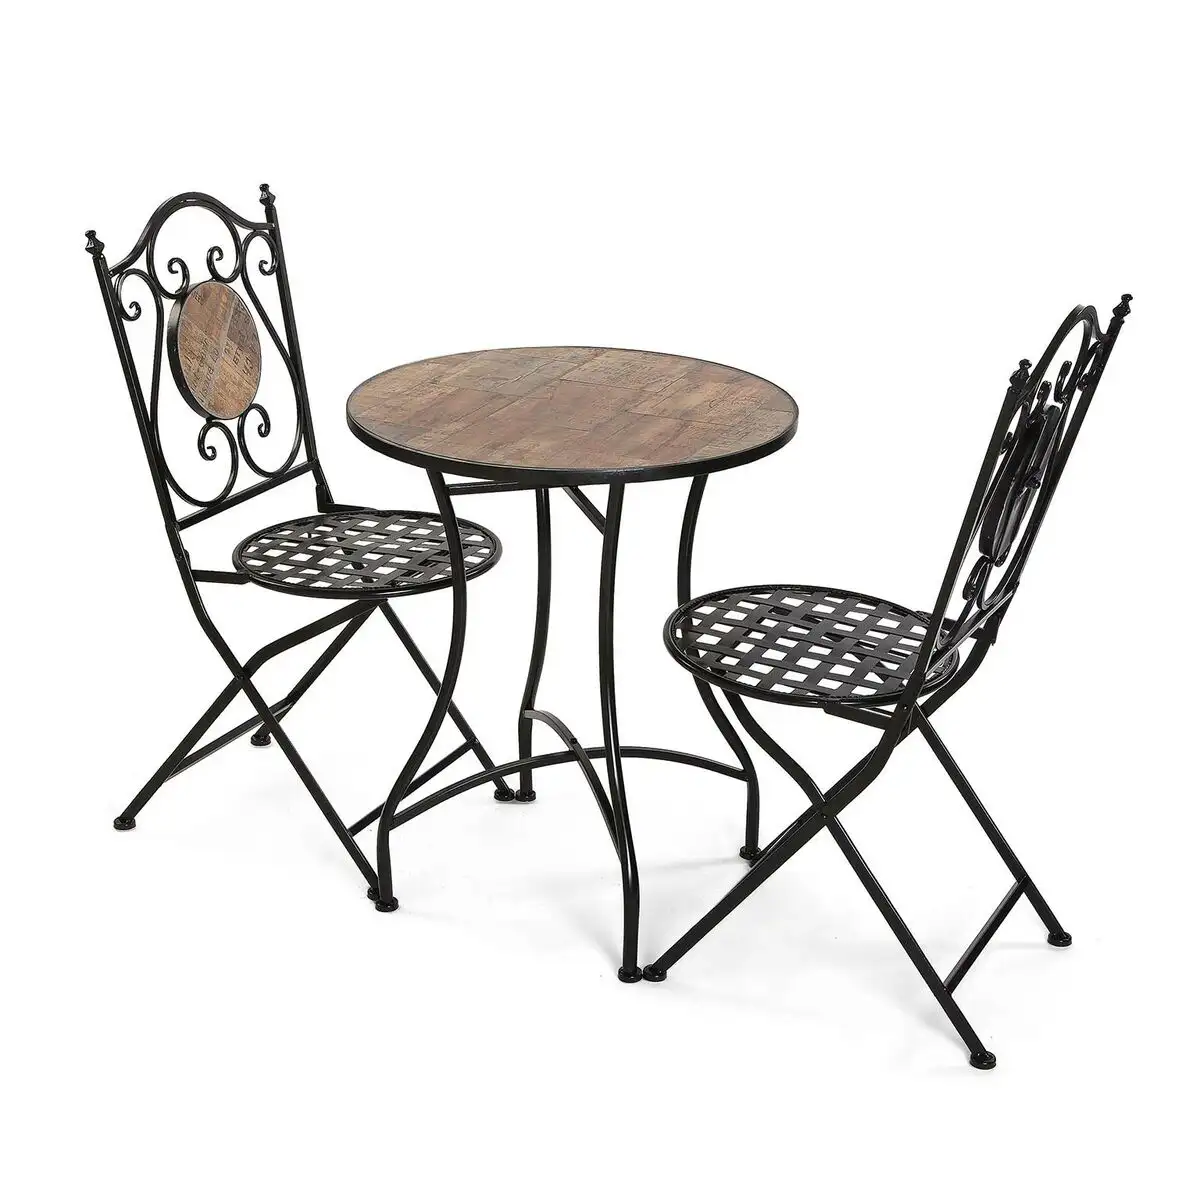 Ensemble table 2 chaises versa irida noir metal 60 x 71 x 60 cm_2332. Bienvenue sur DIAYTAR SENEGAL - Où le Shopping est une Affaire Personnelle. Découvrez notre sélection et choisissez des produits qui reflètent votre unicité et votre individualité.